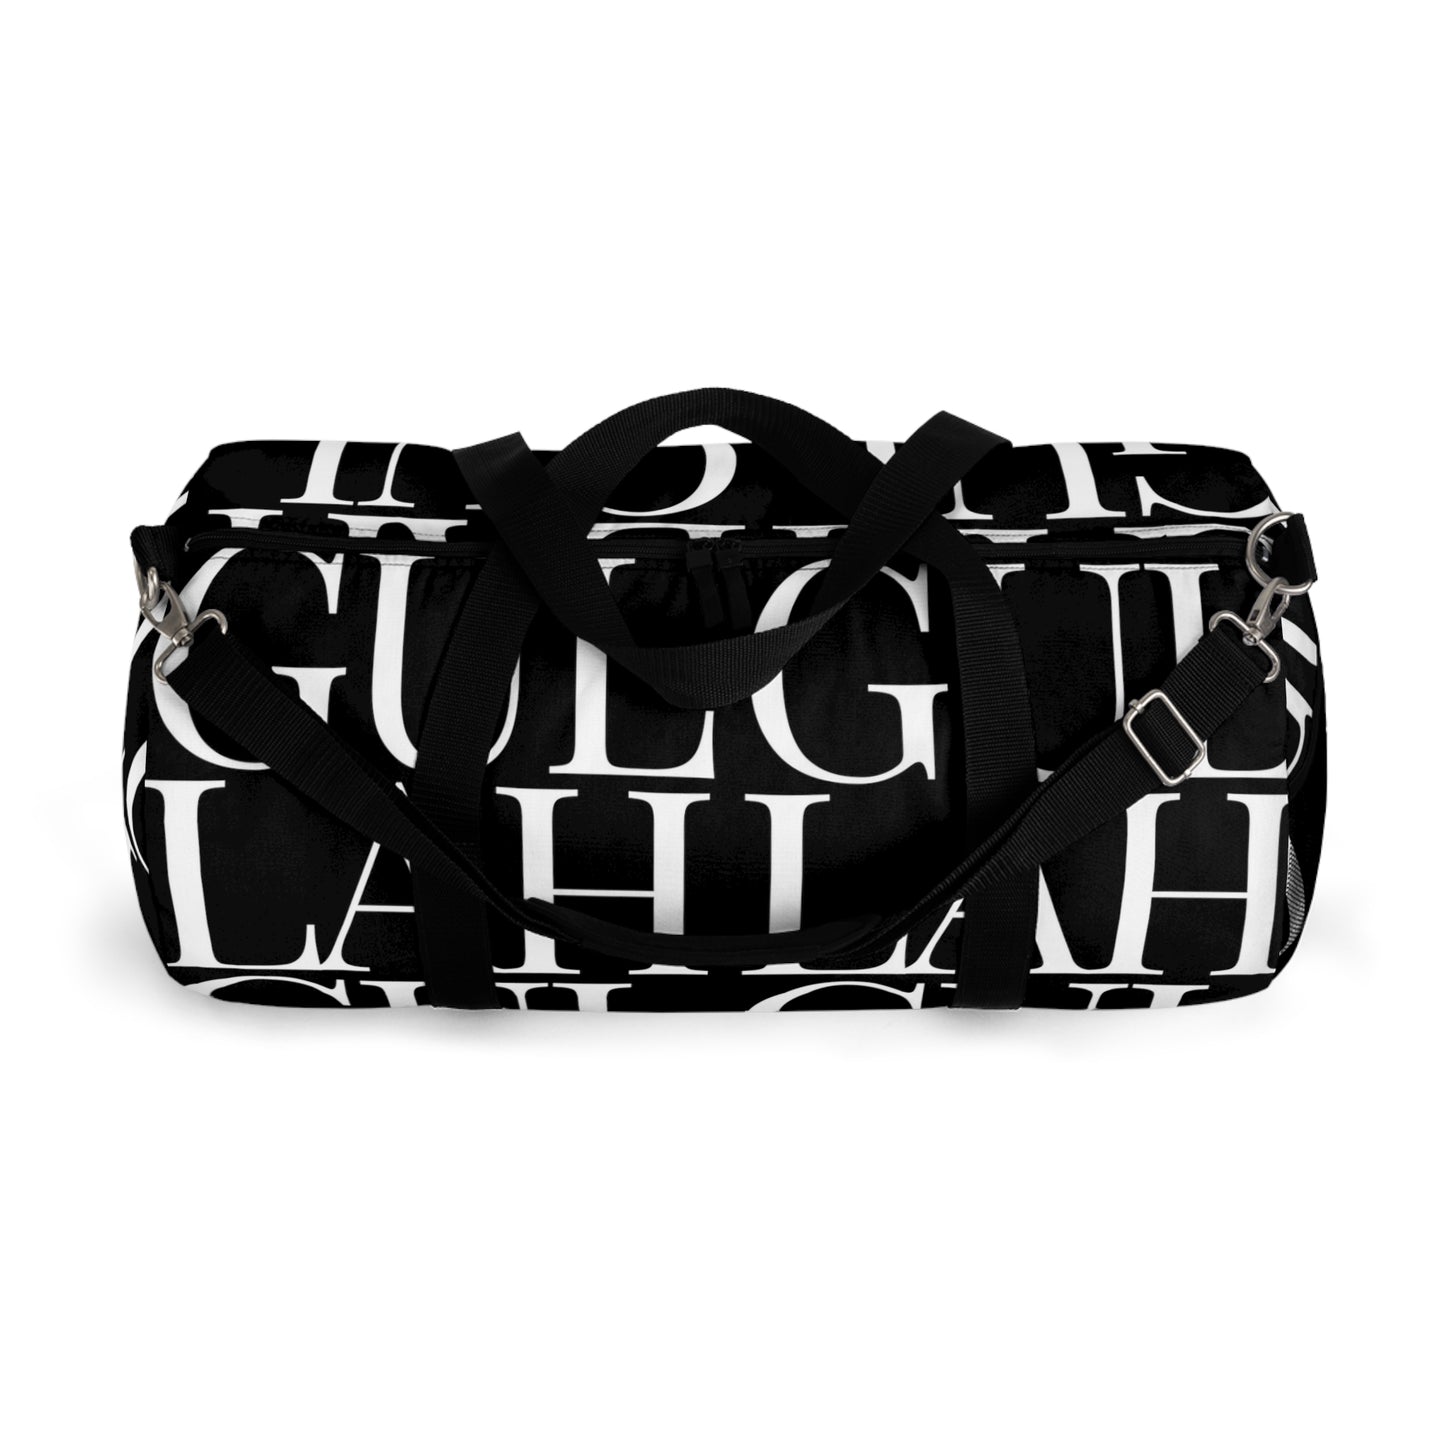 Large Gullah Duffel Bag